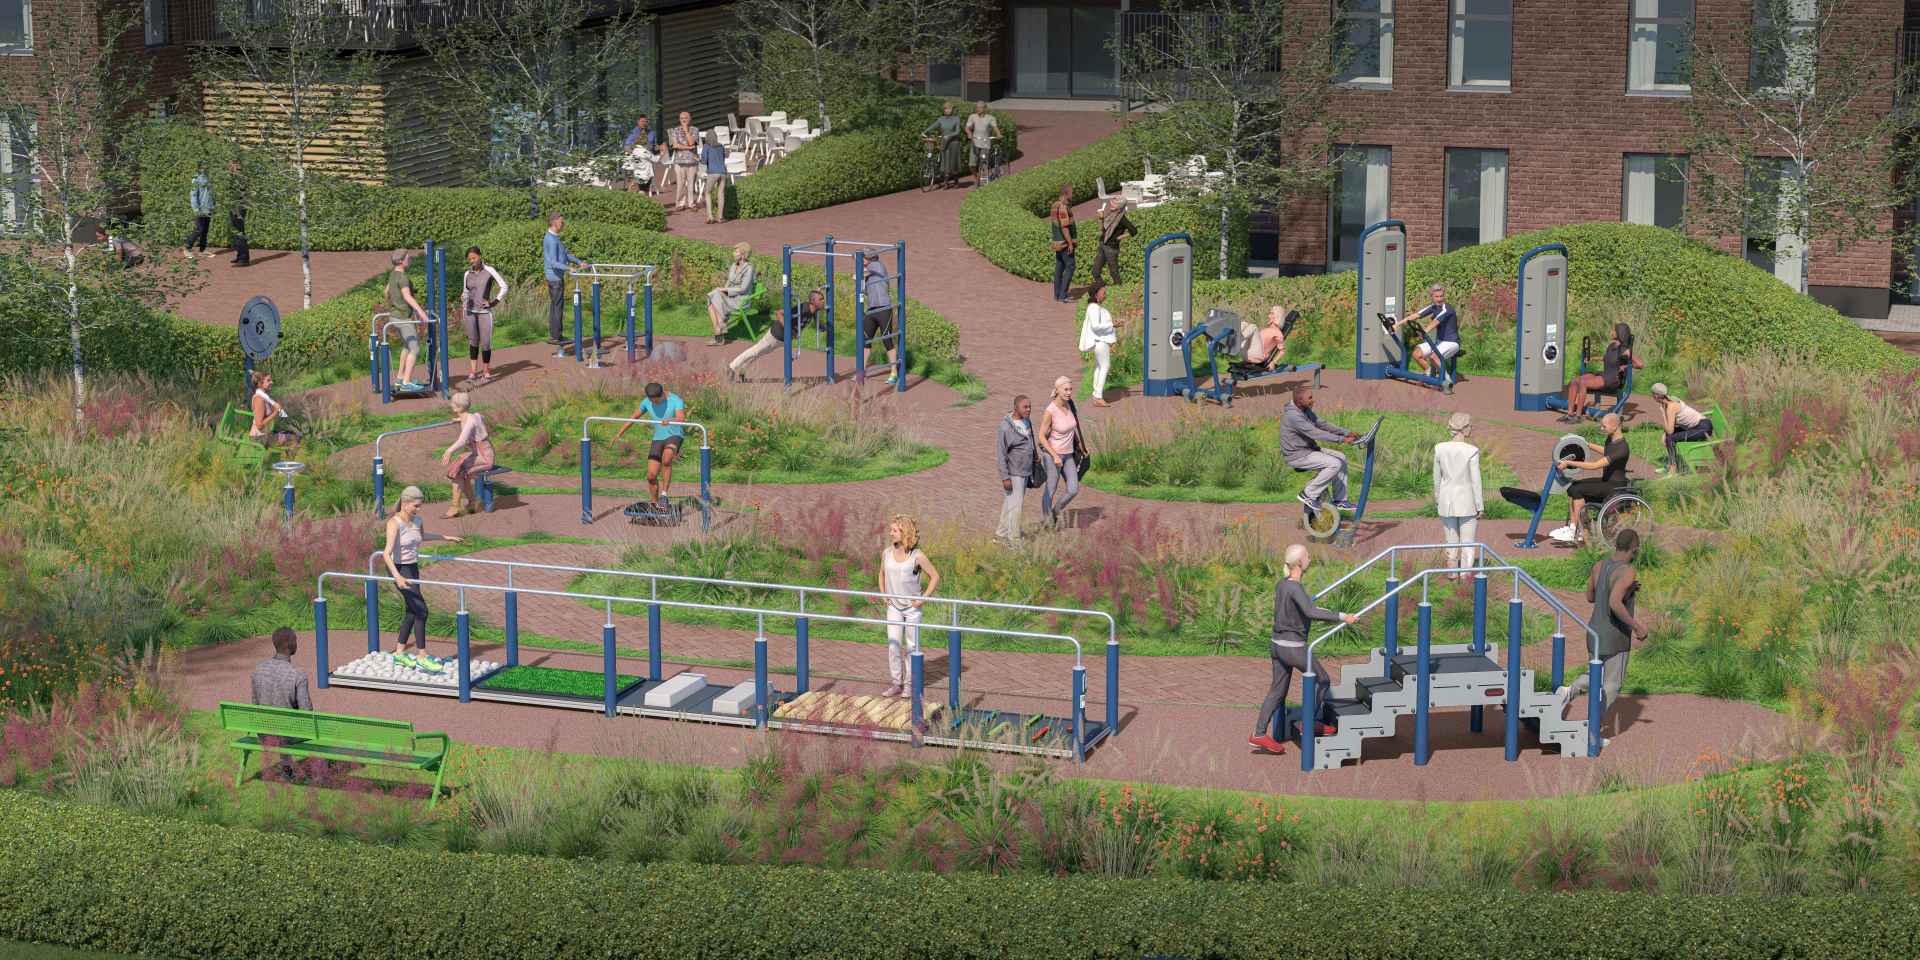 A concept design for an outdoor rehabilitation area by KOMPAN